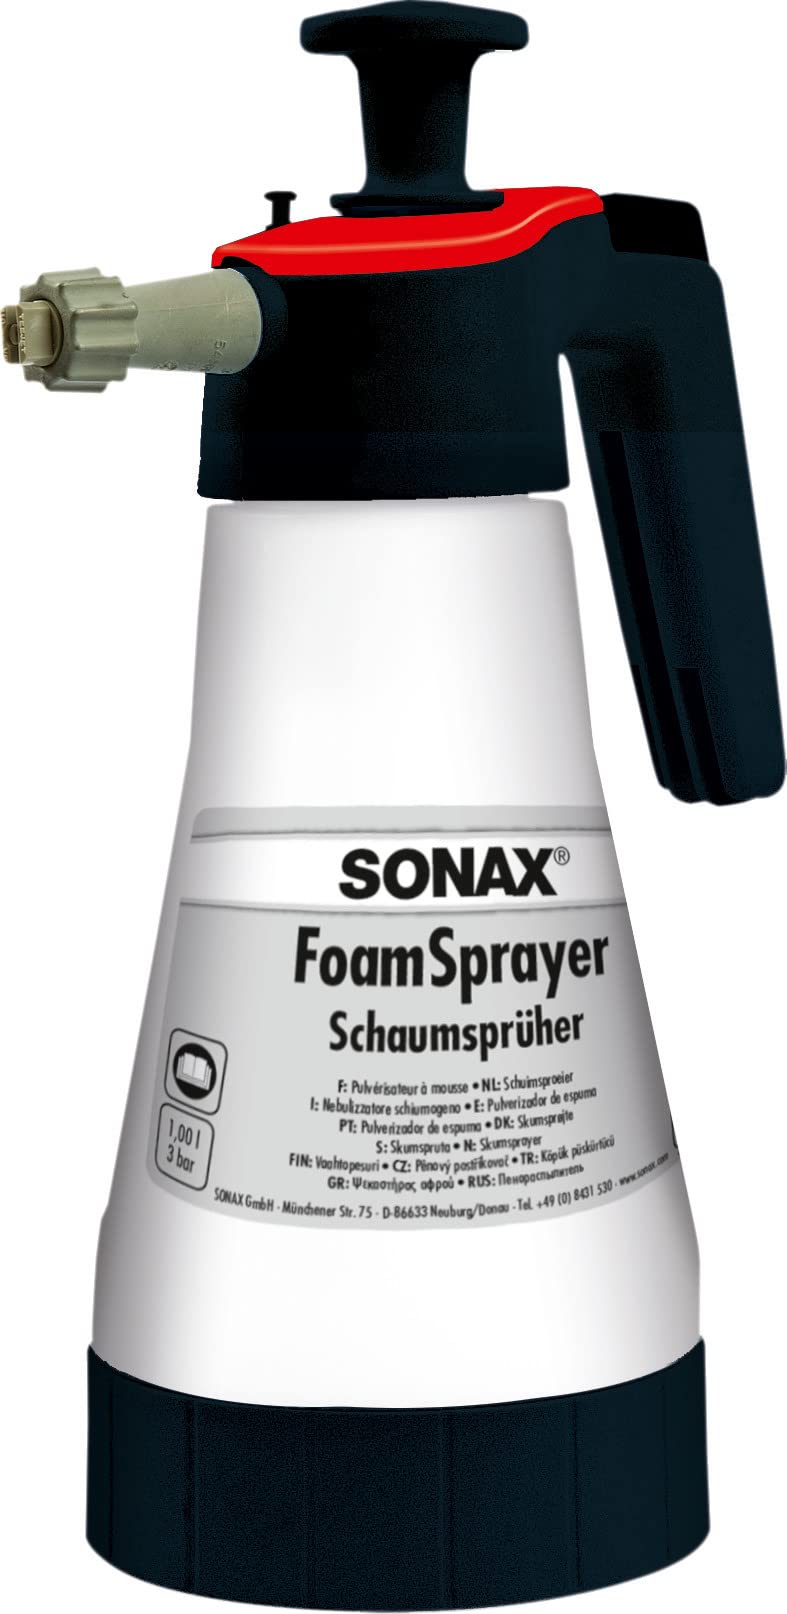 SONAX FoamSprayer 1 Liter (1 Stück) für ein gleichmäßiges Schaumbild und ein noch gründlicheres Reinigungsergebnis | Art-Nr. 04965410 von SONAX